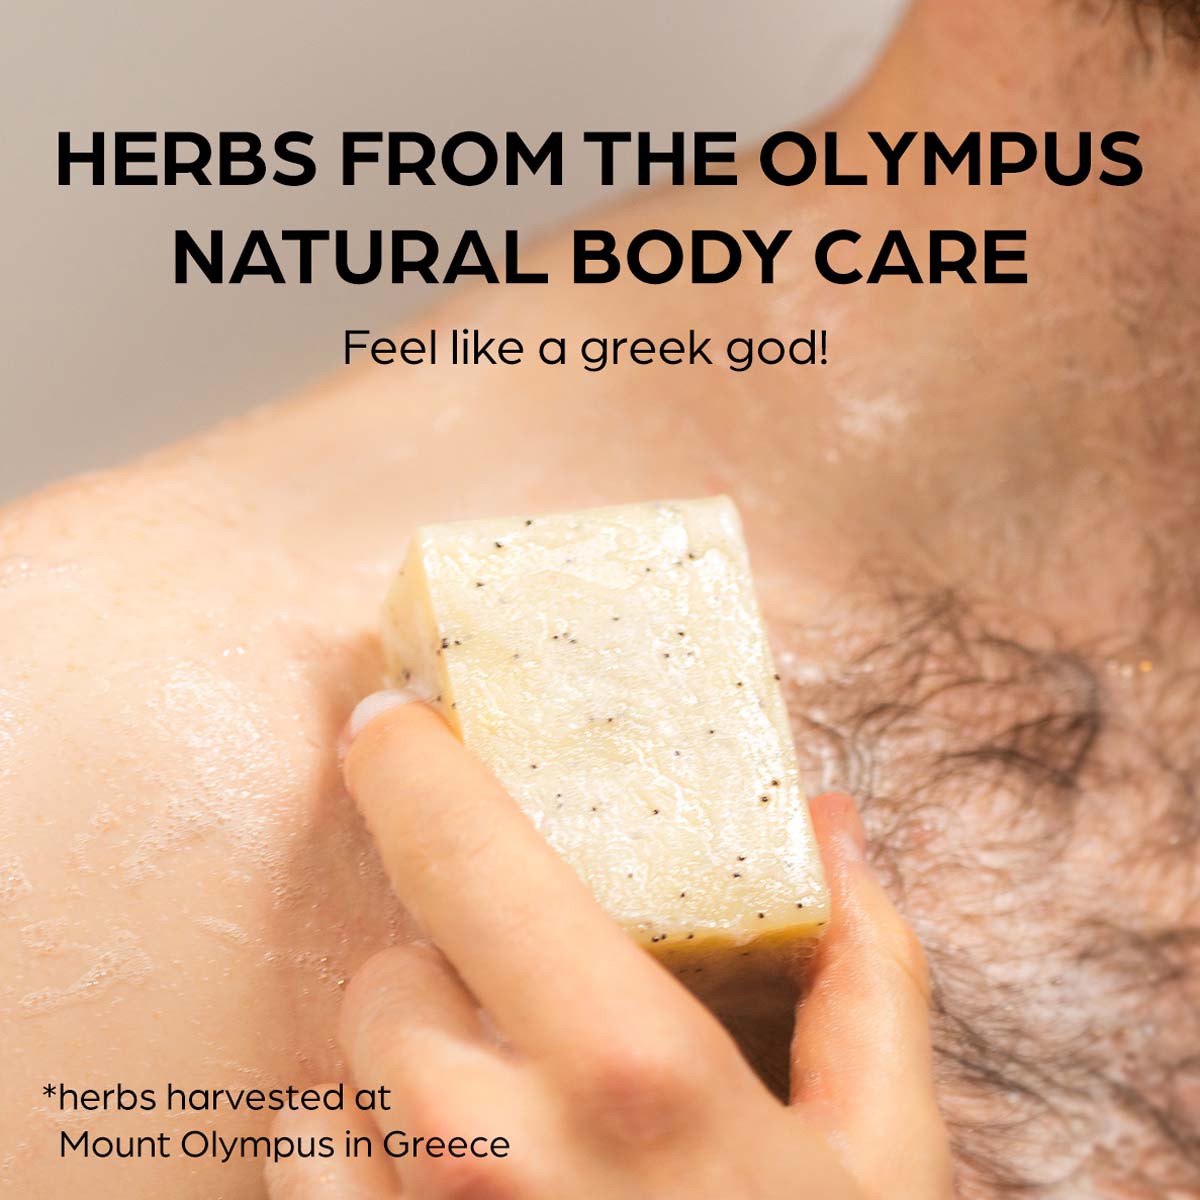 Olymp Godlike Herbs Peeling-Körperpflege Seife